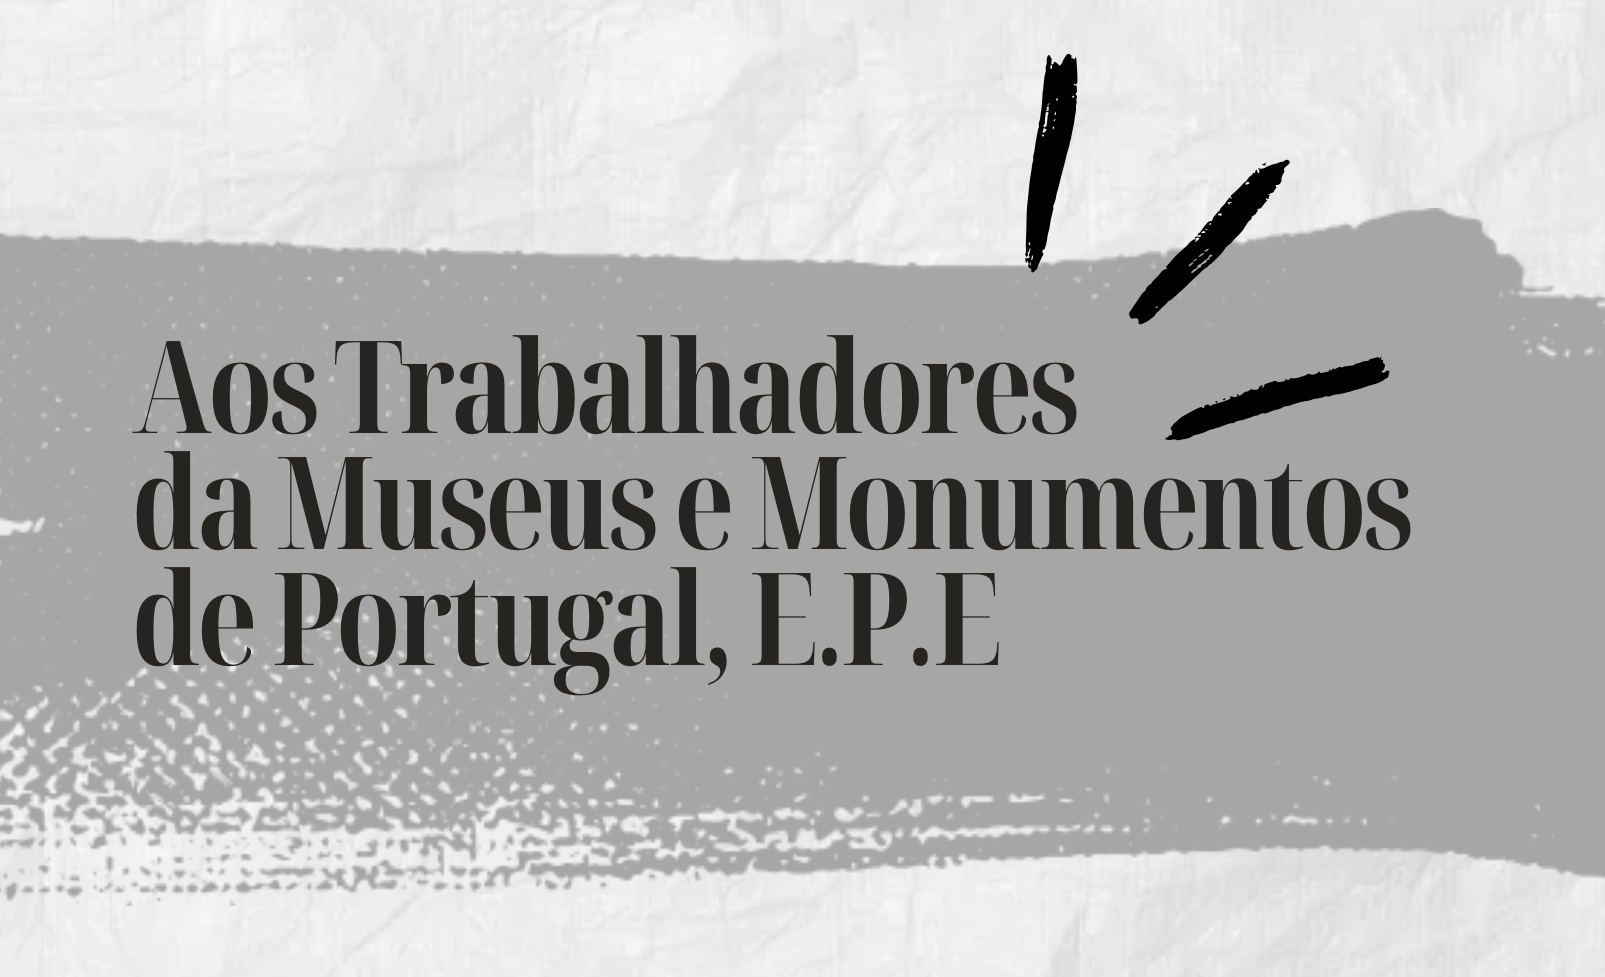 Aos Trabalhadores da Museus e Monumentos de Portugal, E.P.E